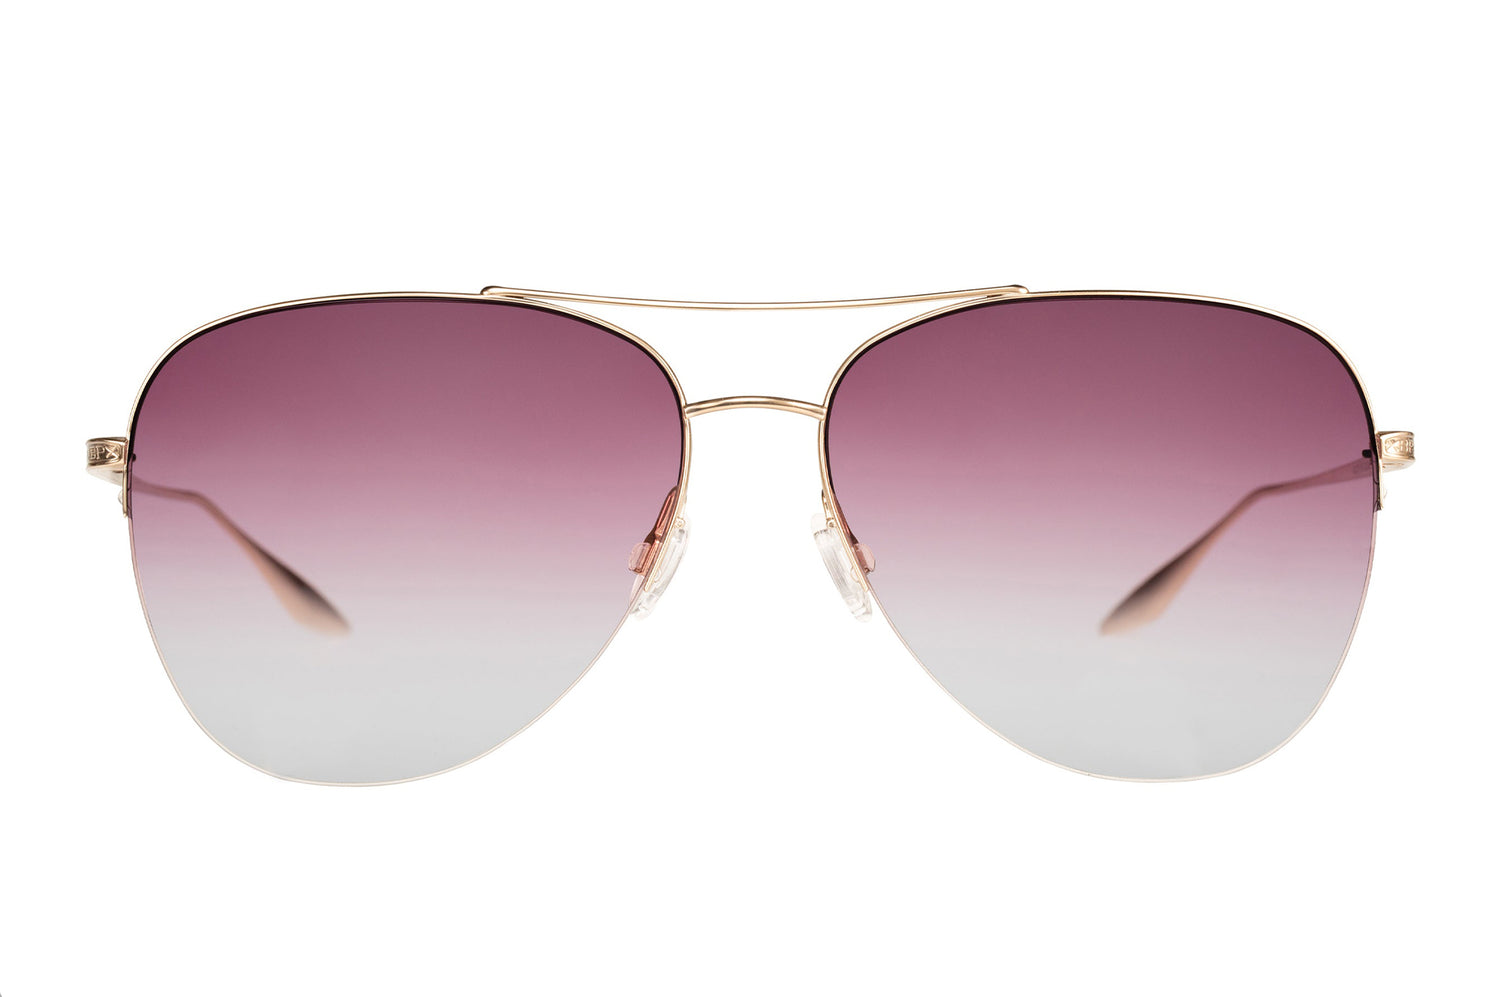 Designer Chevalier Glasses - Aviator Sunglasses